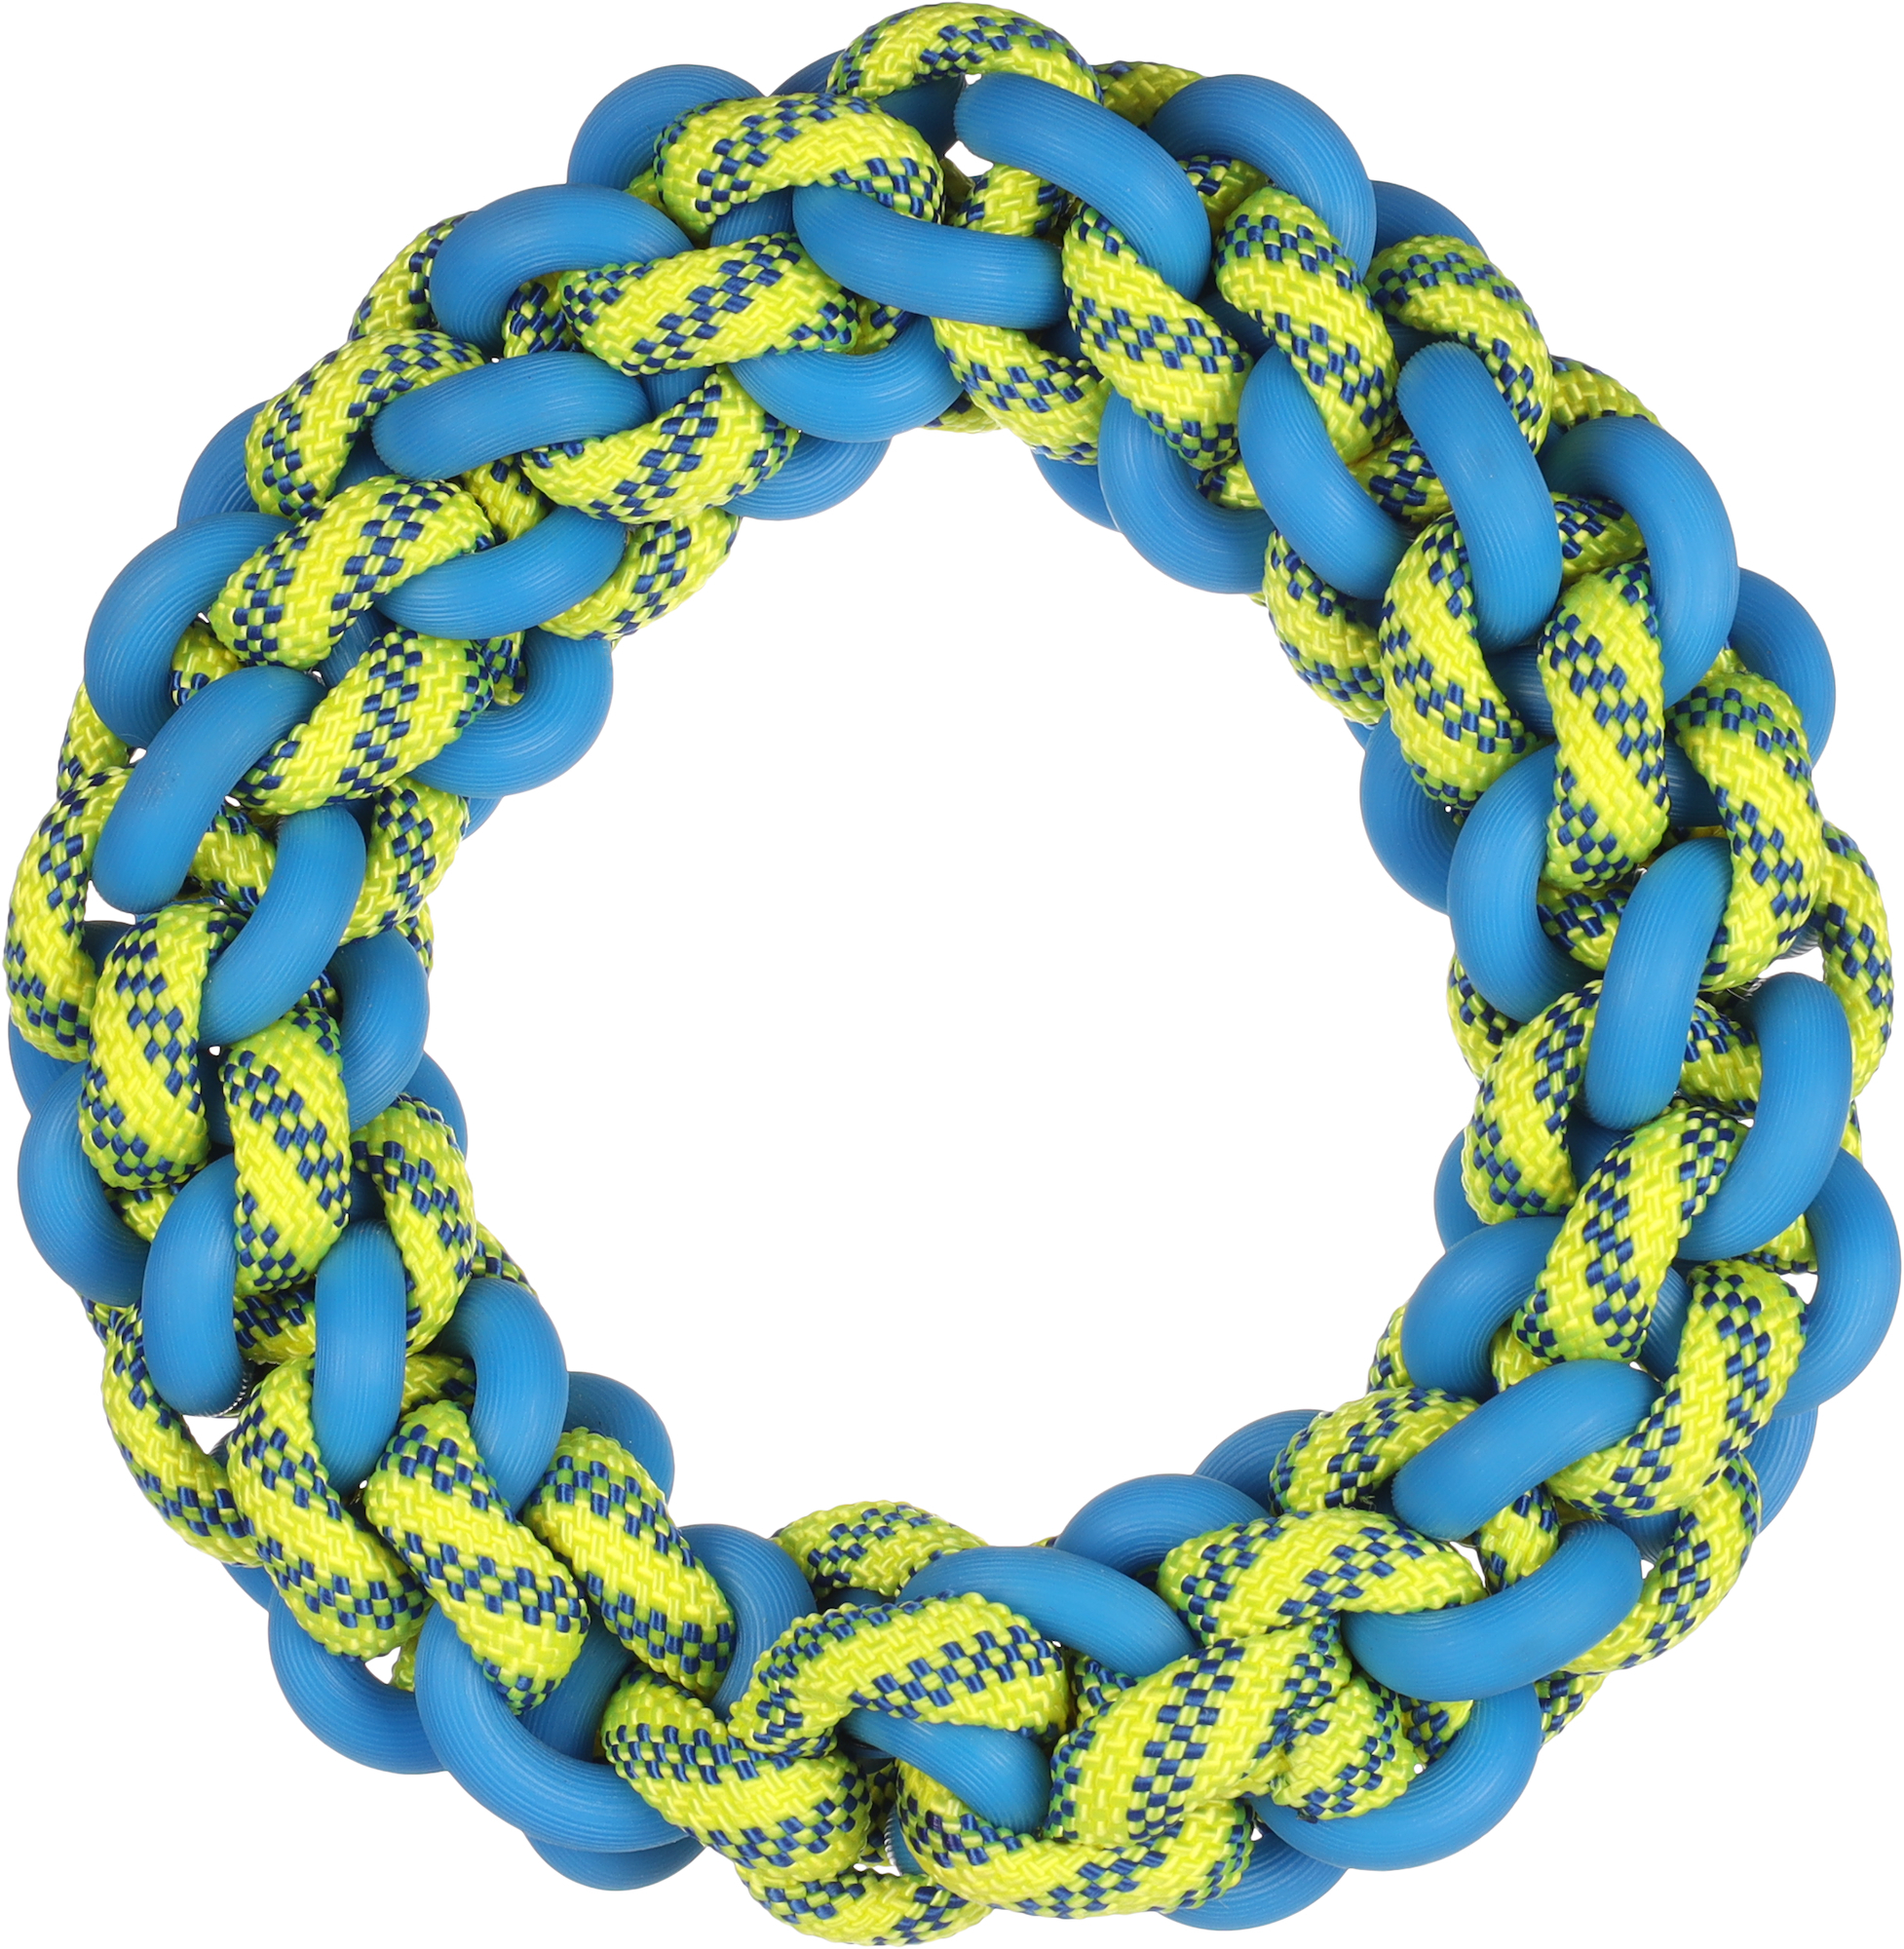 Tofla Hundespielzeug Ring blau/gelb aus strapazierfähigem Gummi und Nylon